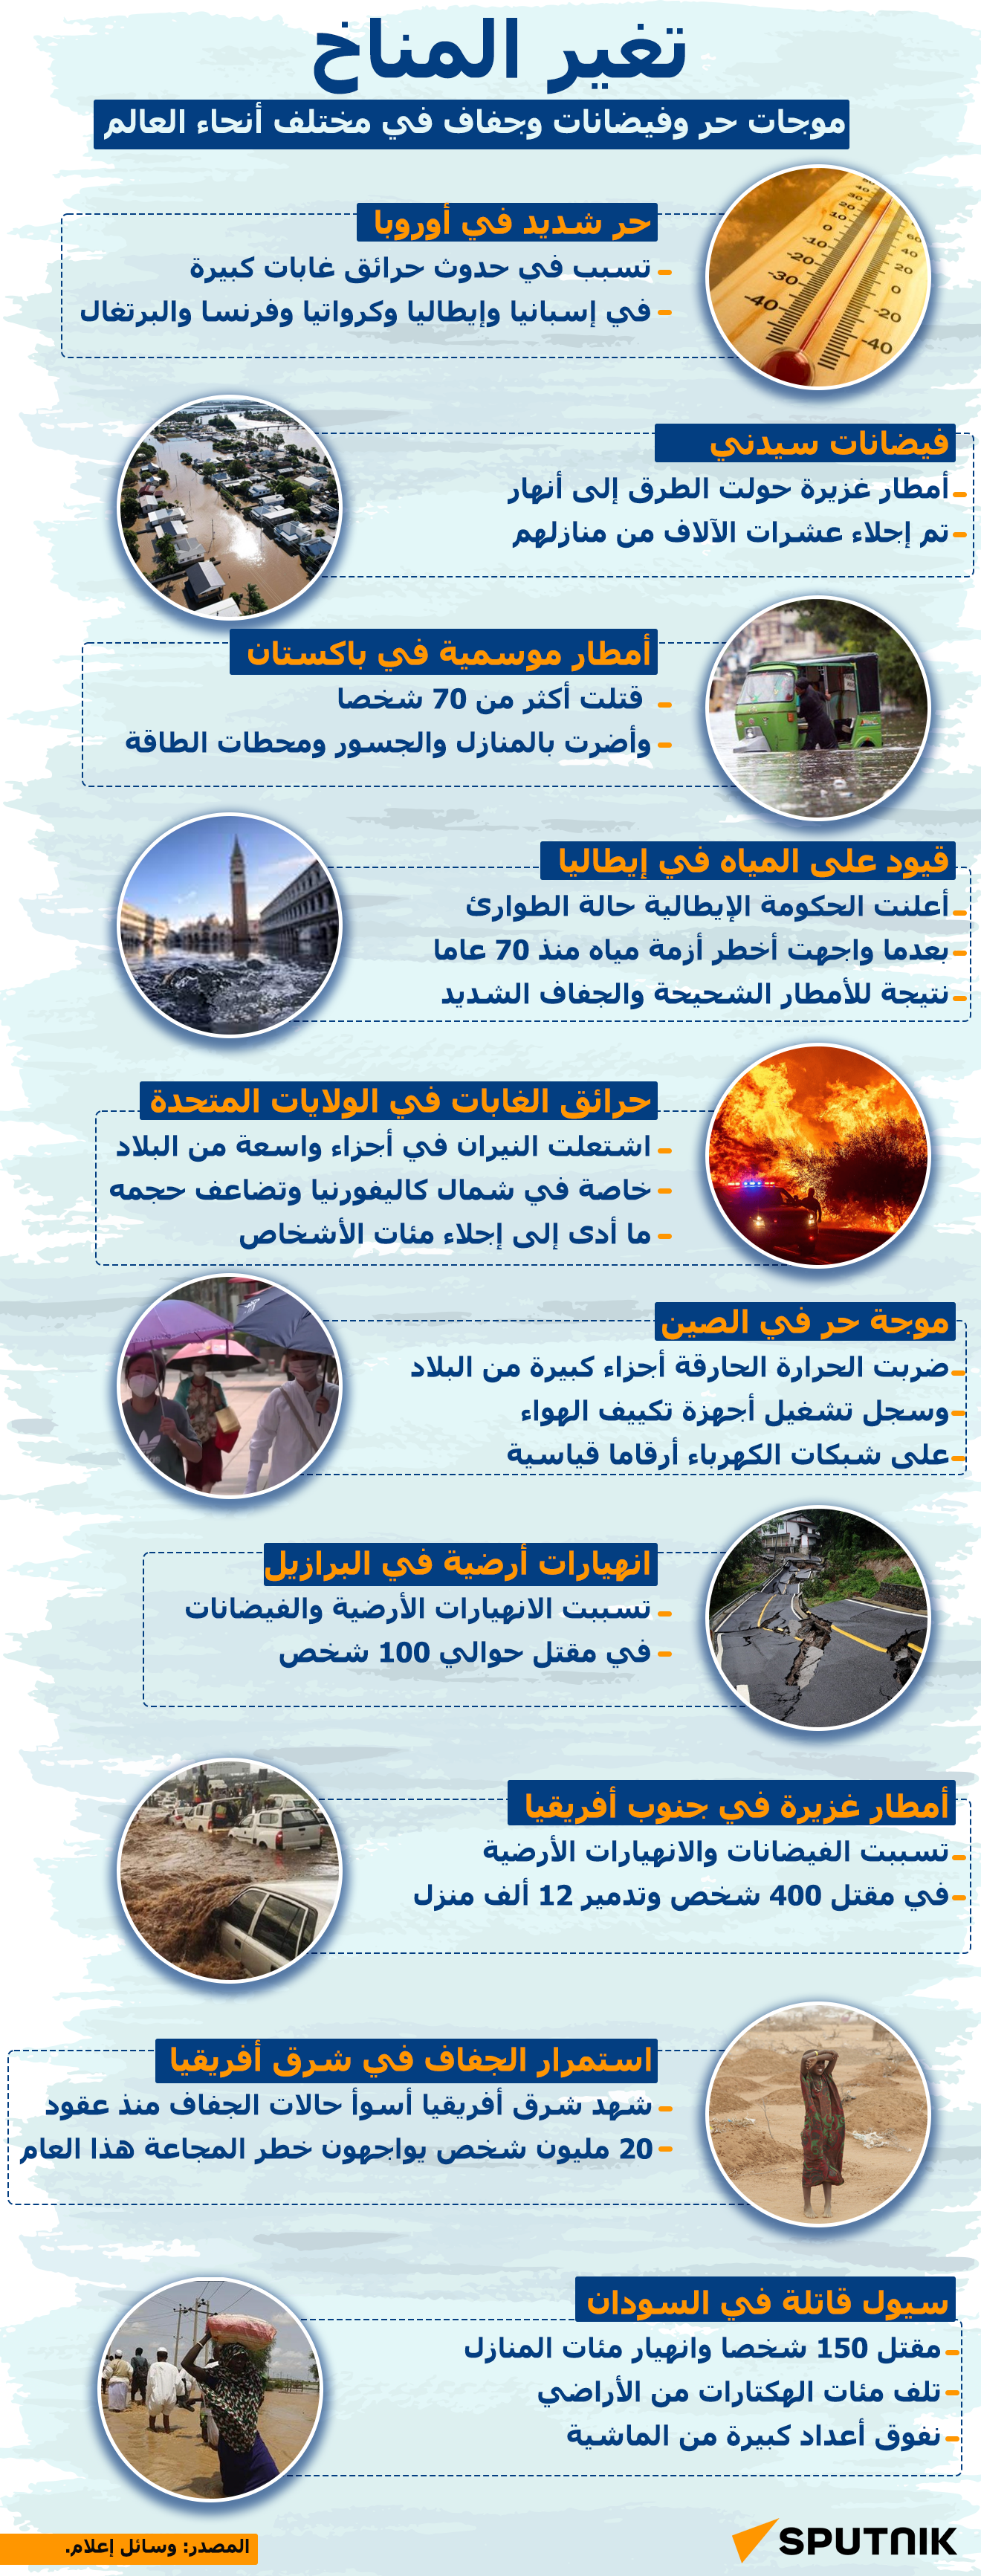 موجات حر وفيضانات وجفاف في مختلف أنحاء العالم - سبوتنيك عربي